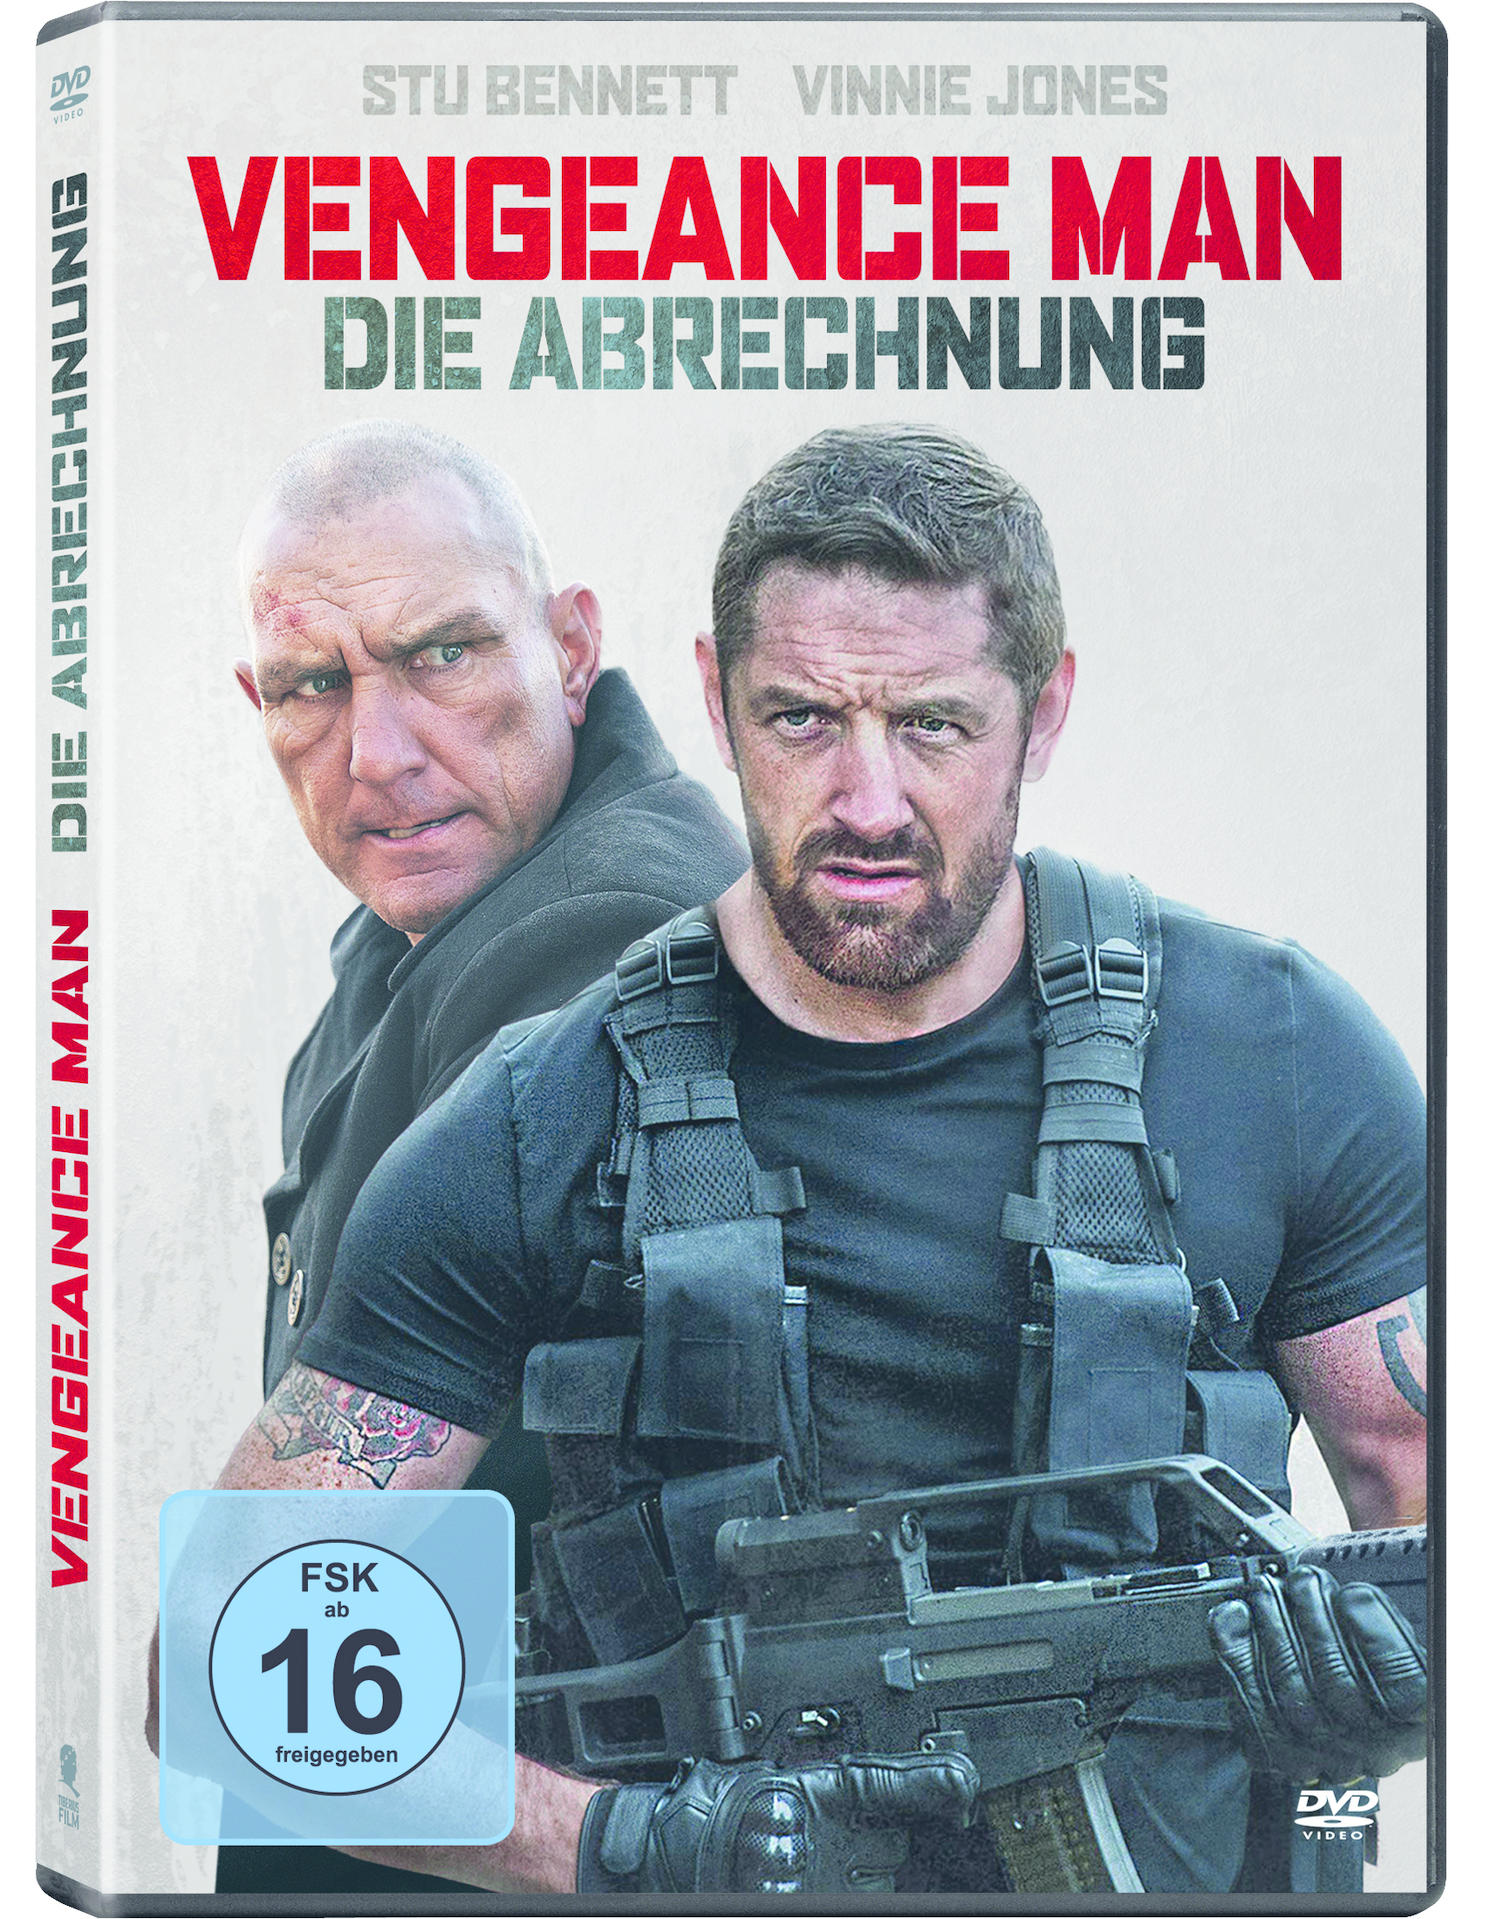 Venegance Man - Die Abrechnung DVD